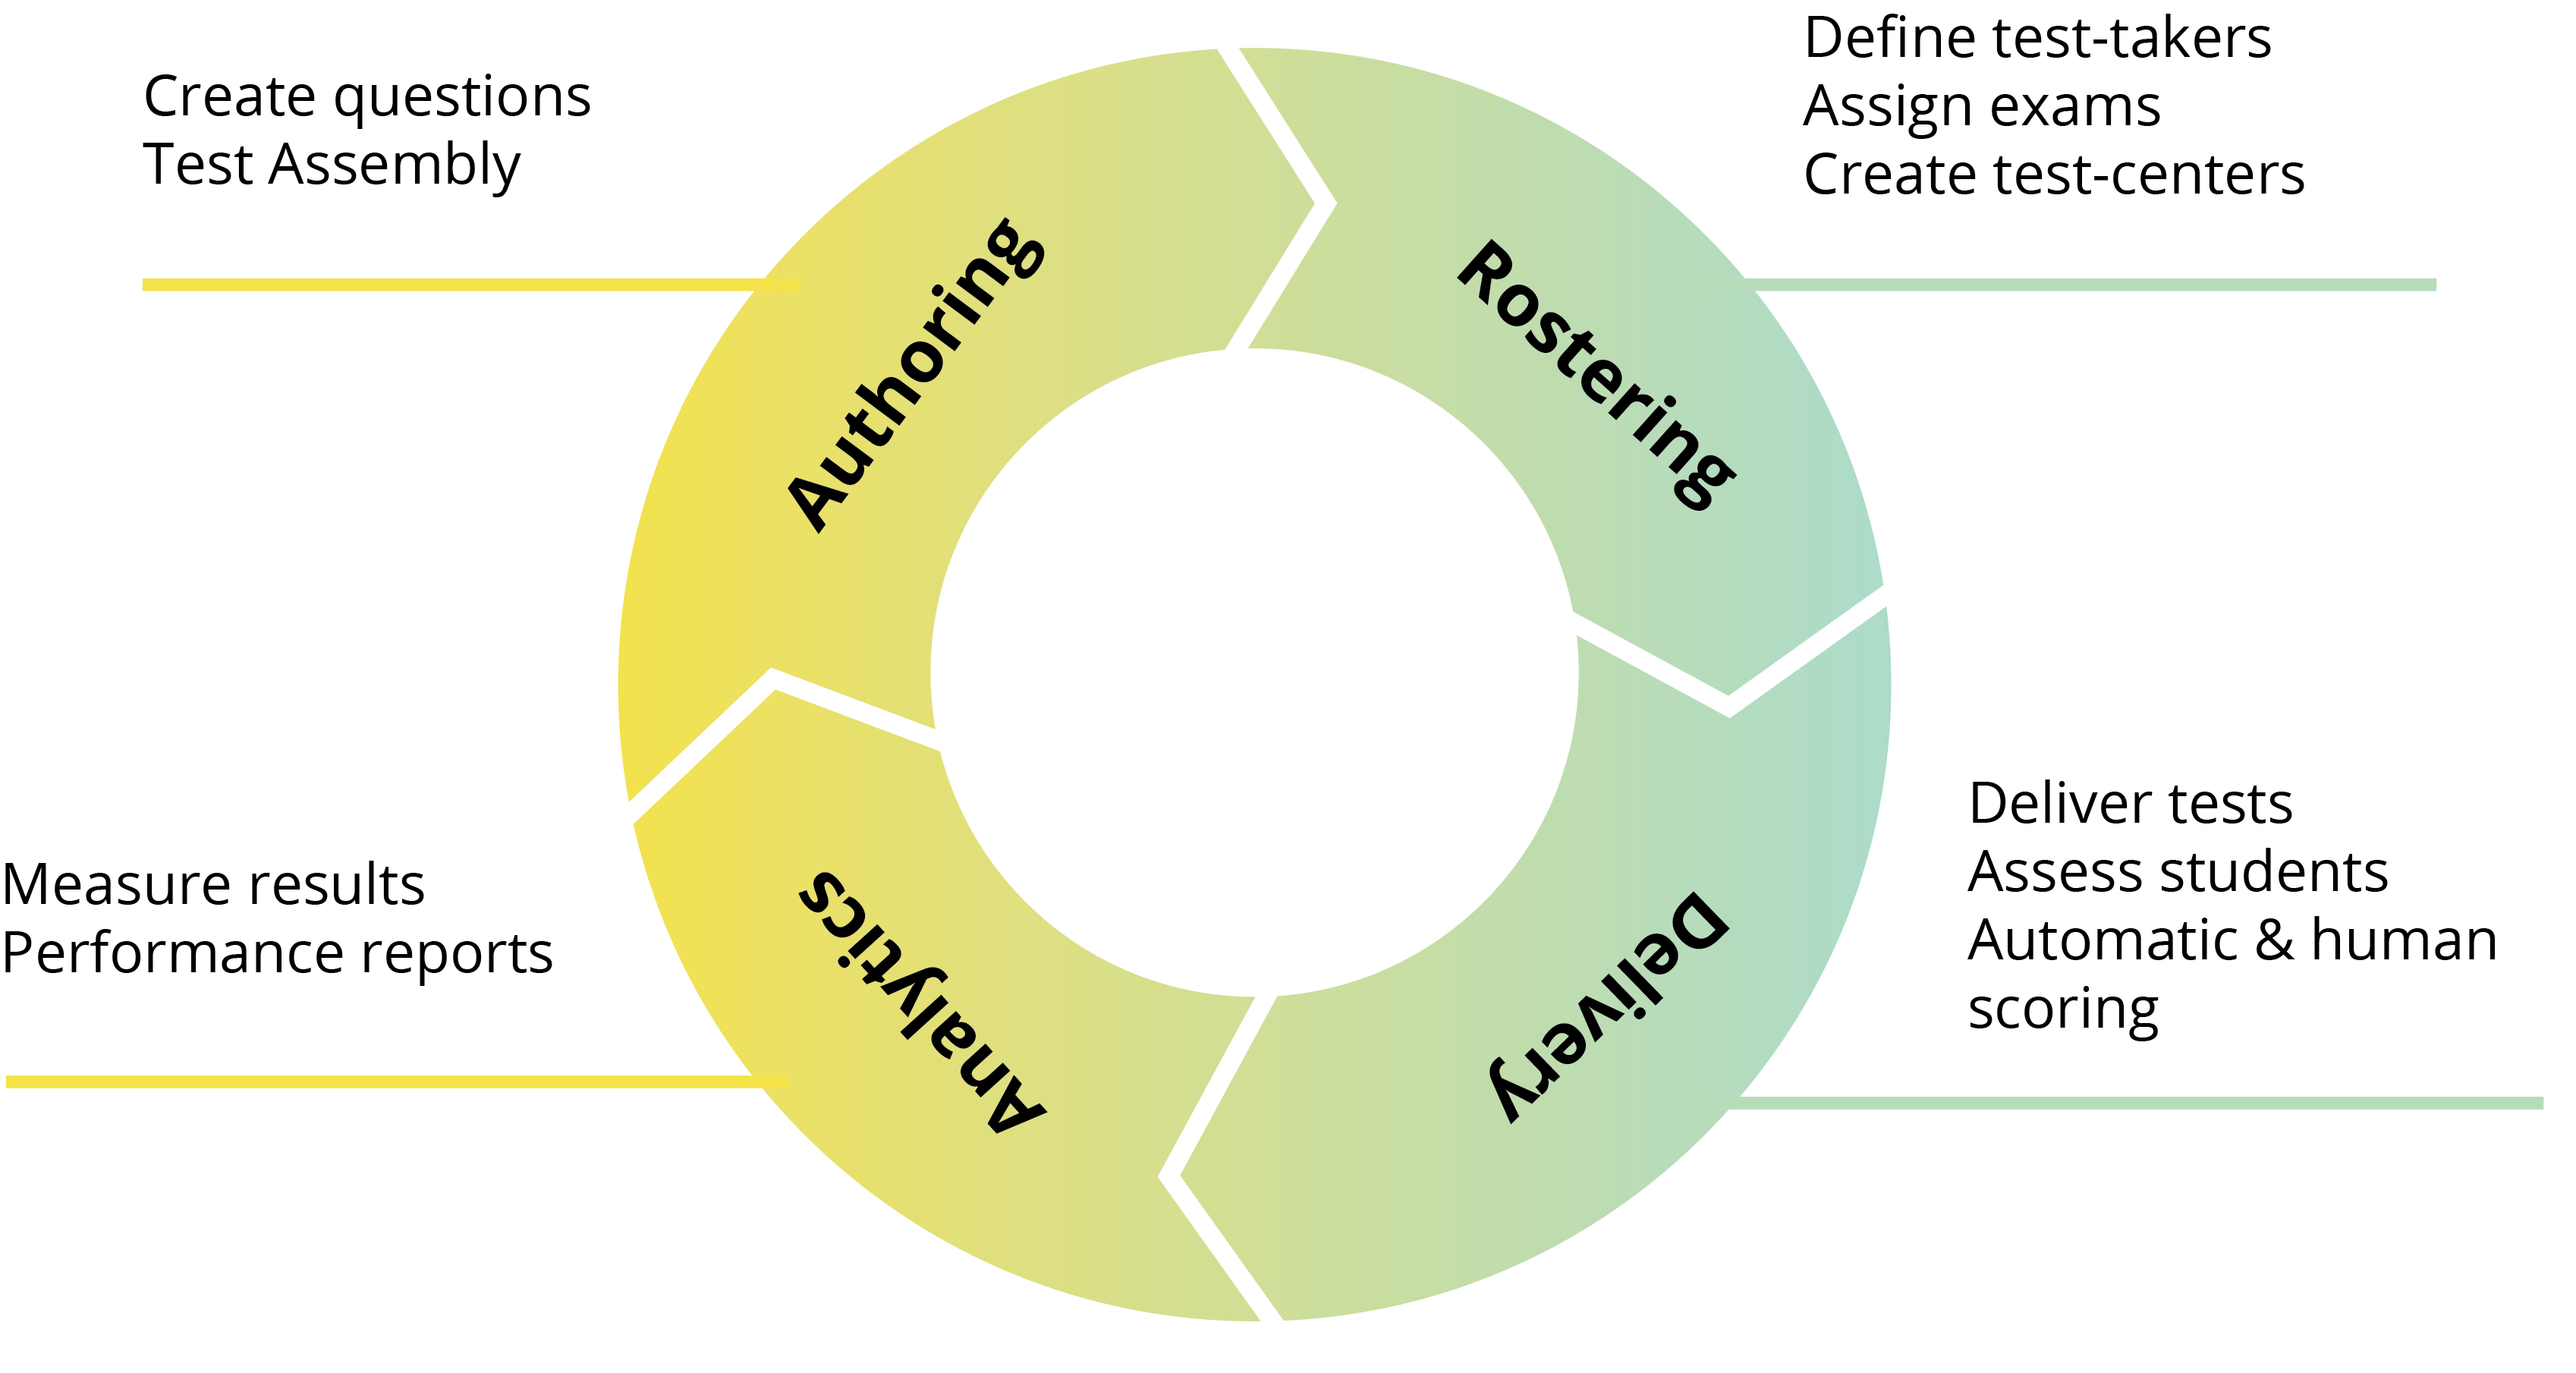 アセスメント・フィードバック・サイクルのフローチャートによる視覚的表現：デジタル・アセスメント・プラットフォームで接続されたテストのオーサリング、ロスタリング、配信、レポート。